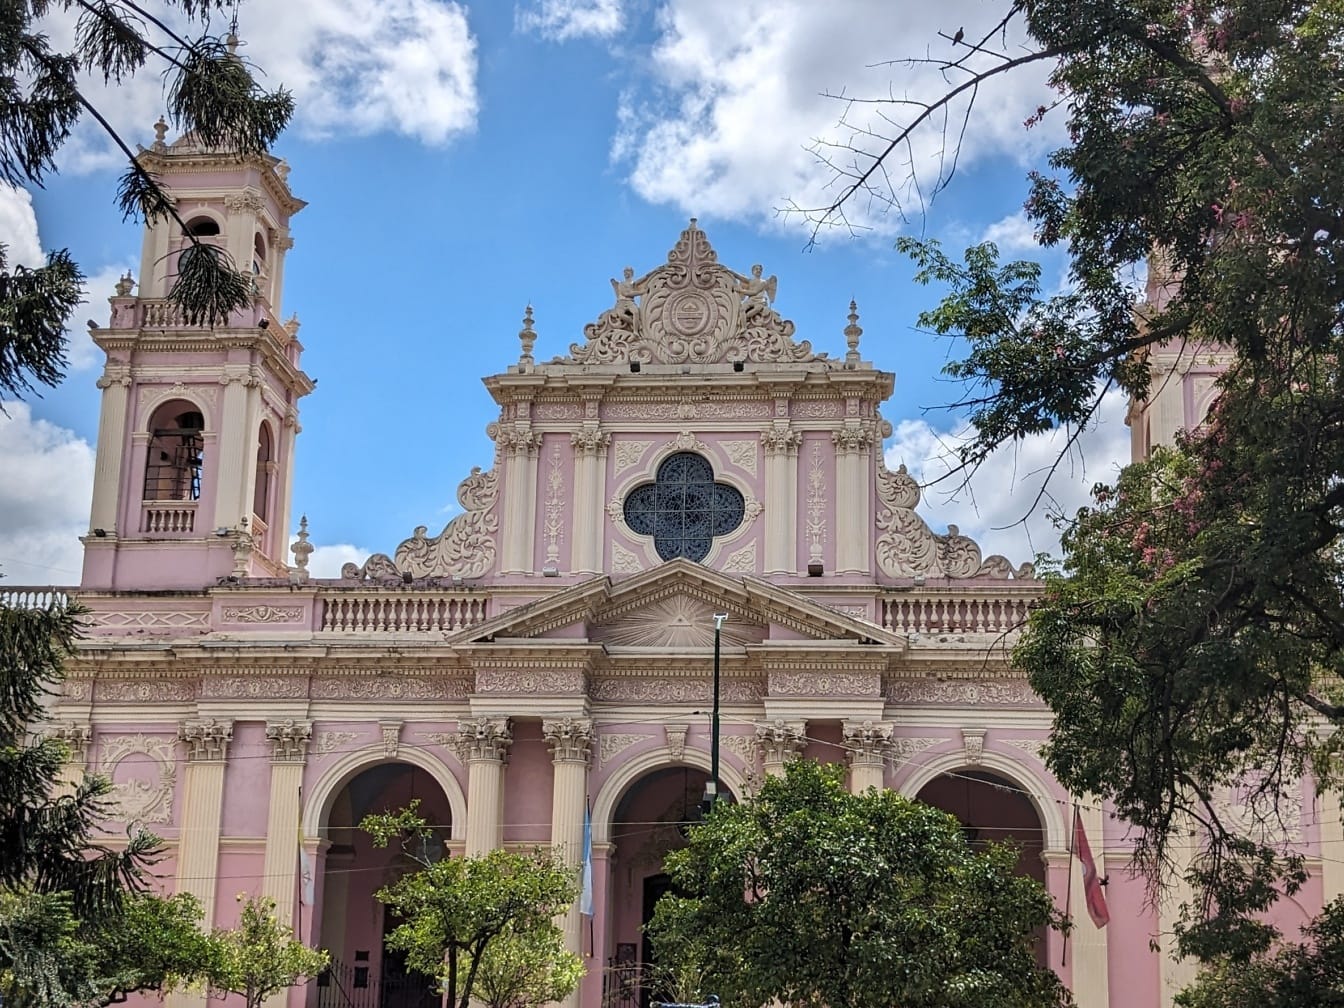 Cattedrale di Salta nel parco della città, nella piazza chiamata Piazza del 9 luglio in Argentina